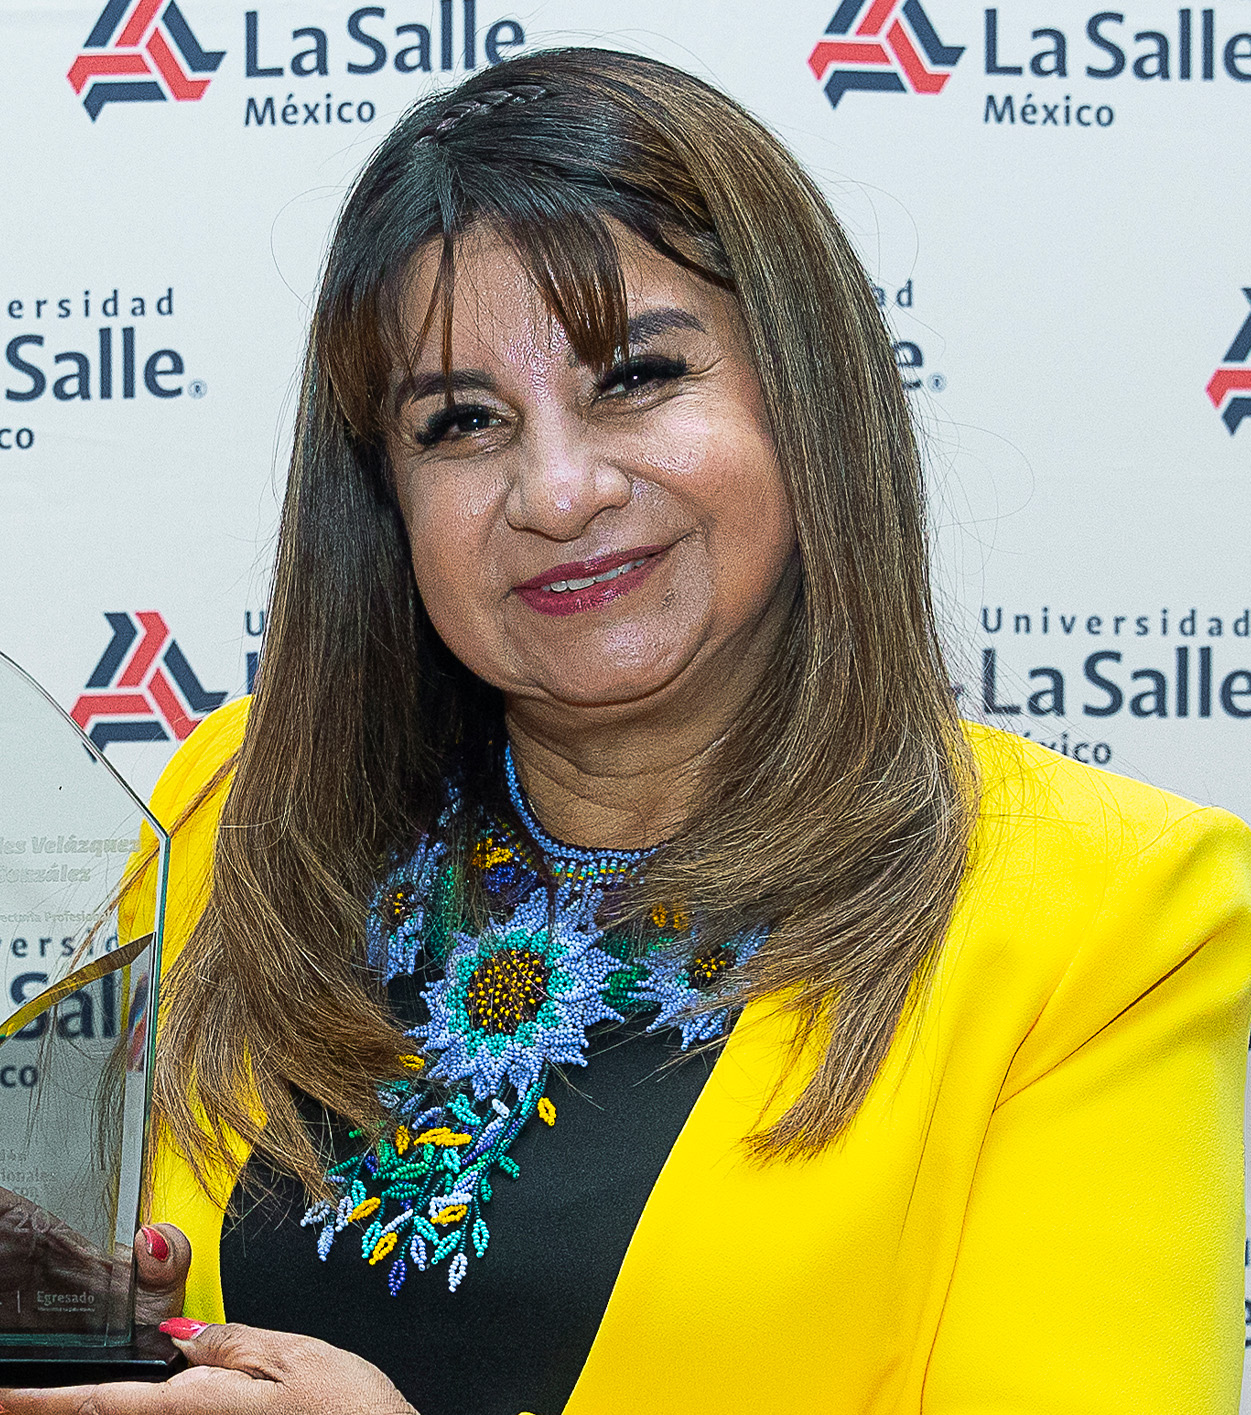 Lourdes Velázquez Gónzalez